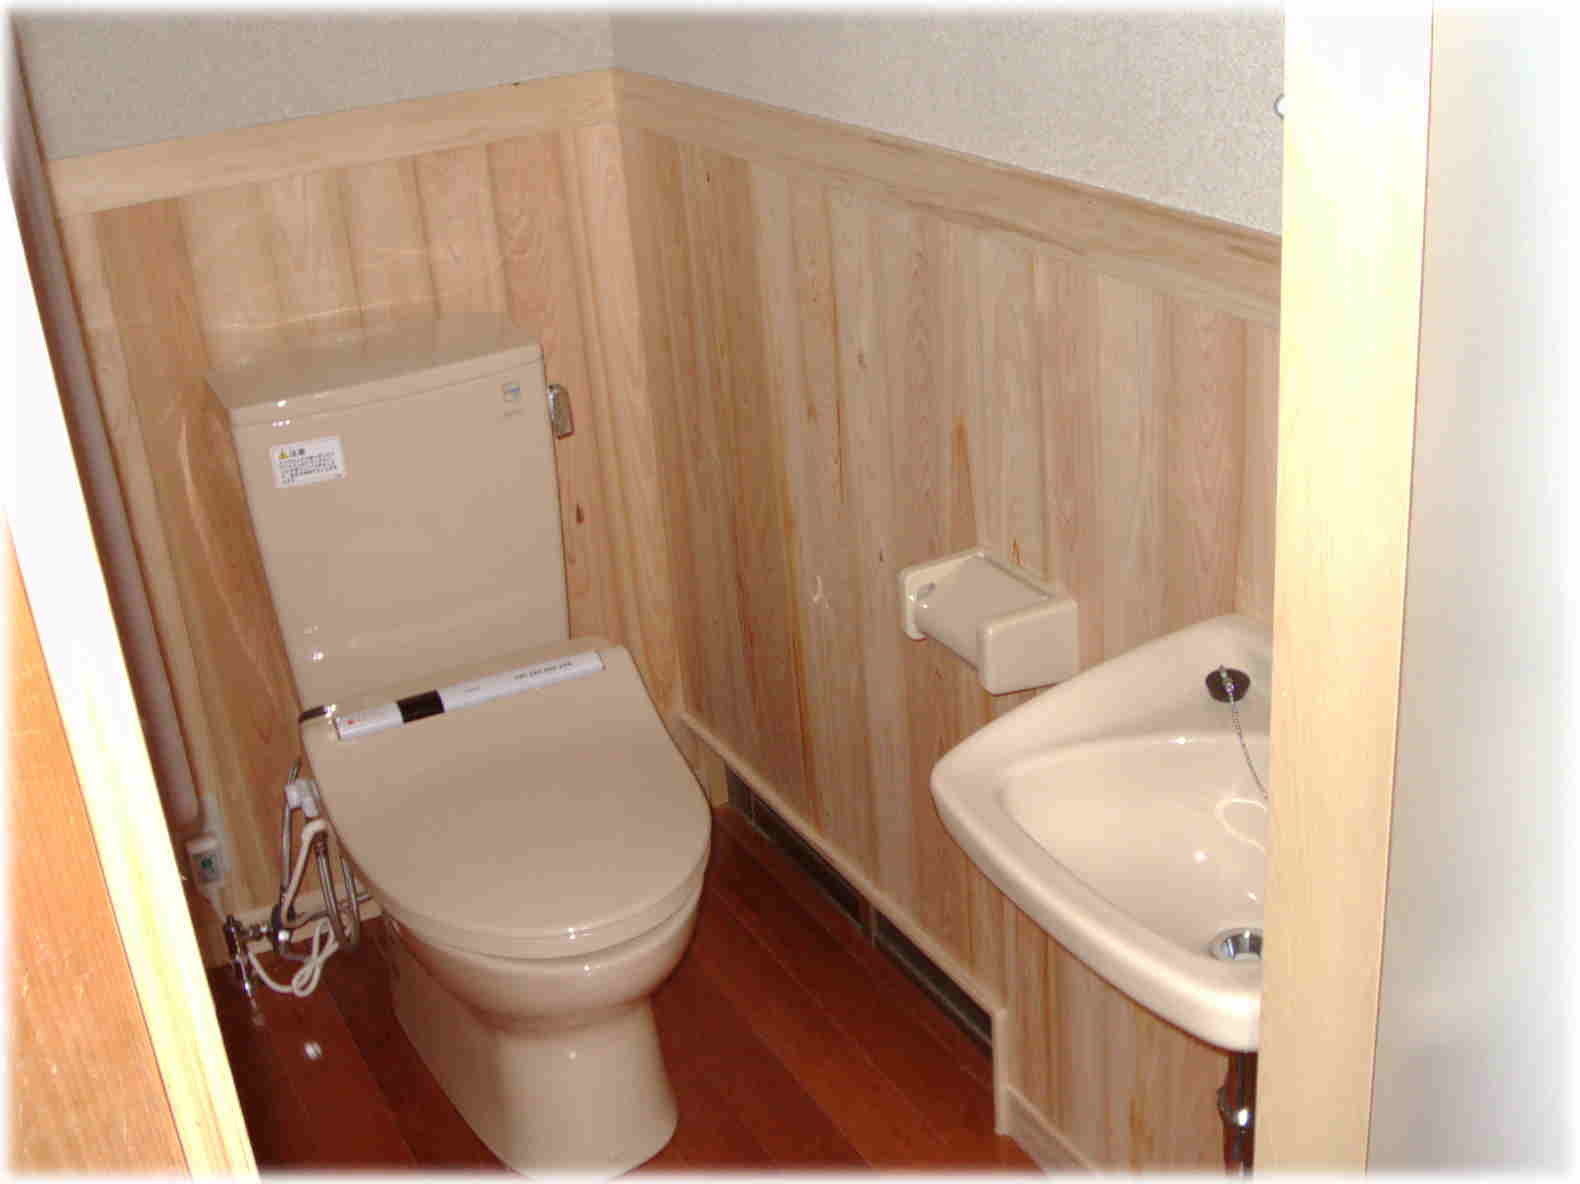 三重県菰野町、四日市で事業を営んでおります松岡燃工のトイレのリフォームページです。水道、下水道工事公認業者。浄化槽